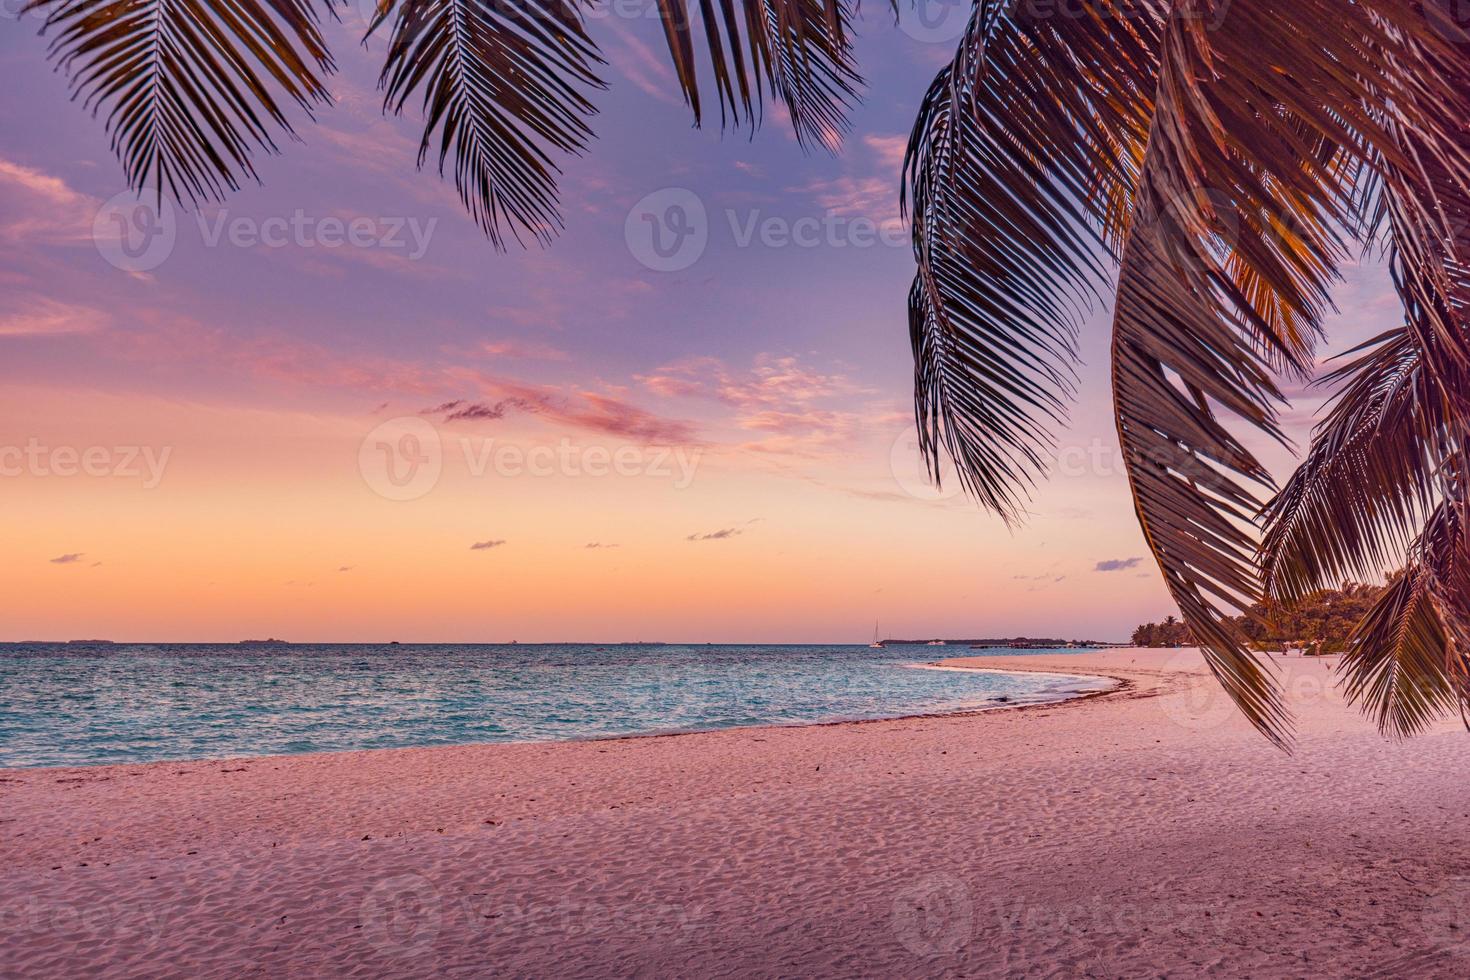 fantastisch detailopname visie van kalmte zee palm boom bladeren, oranje zonsopkomst zonsondergang zonlicht. tropisch eiland strand landschap, exotisch kust kust. zomer vakantie, vakantie verbazingwekkend natuur toneel. kom tot rust paradijs foto